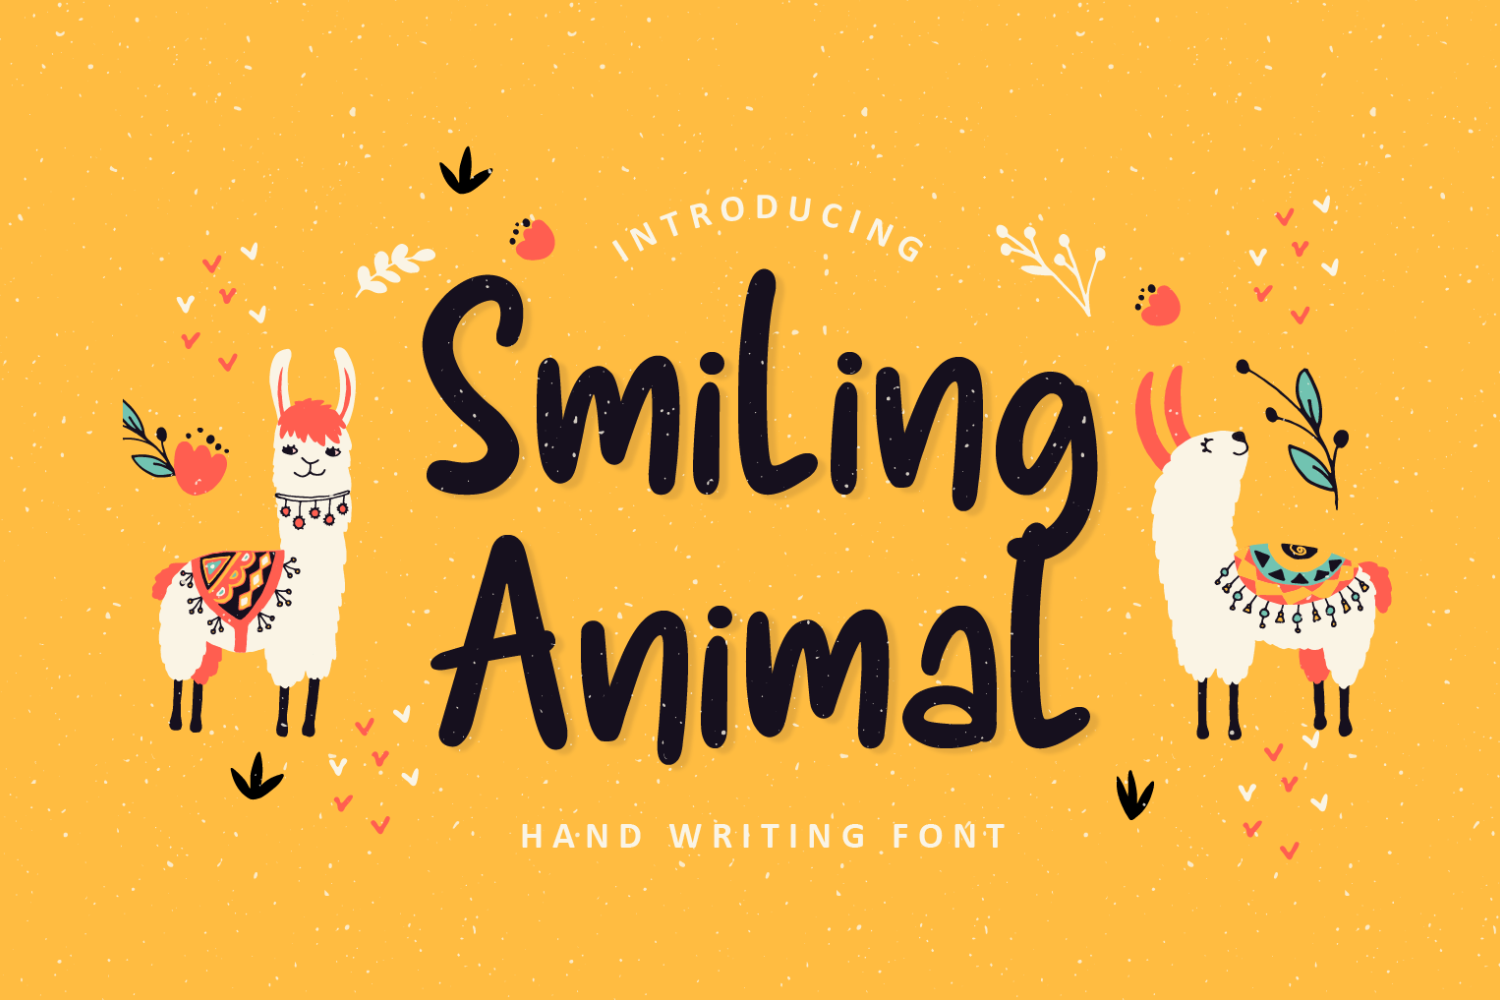 Smiling Animal